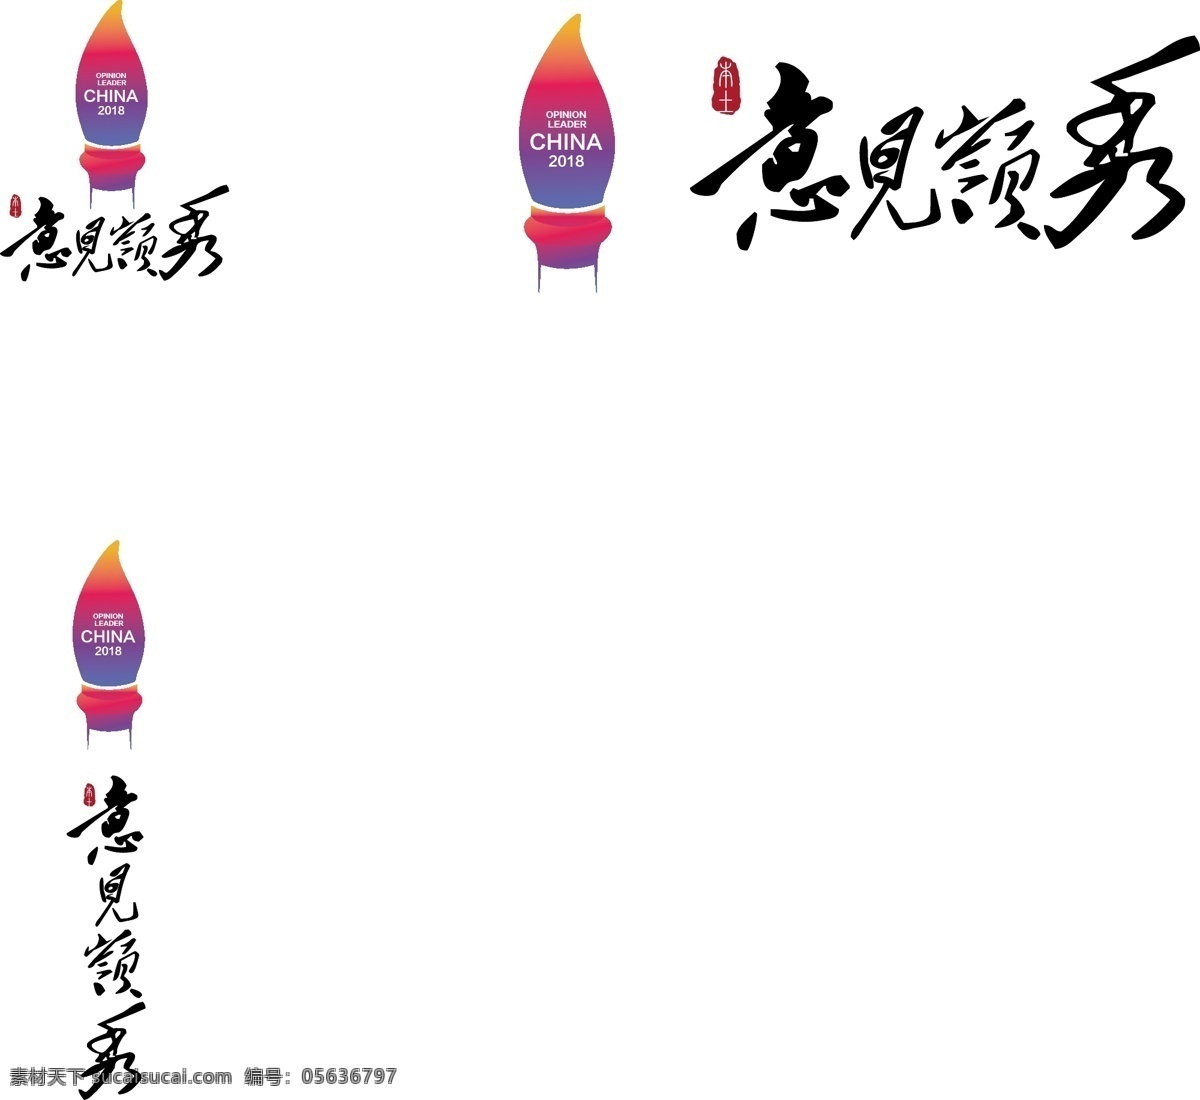 意见 嶺 秀 logo 本土 渐变 品牌展 紫红